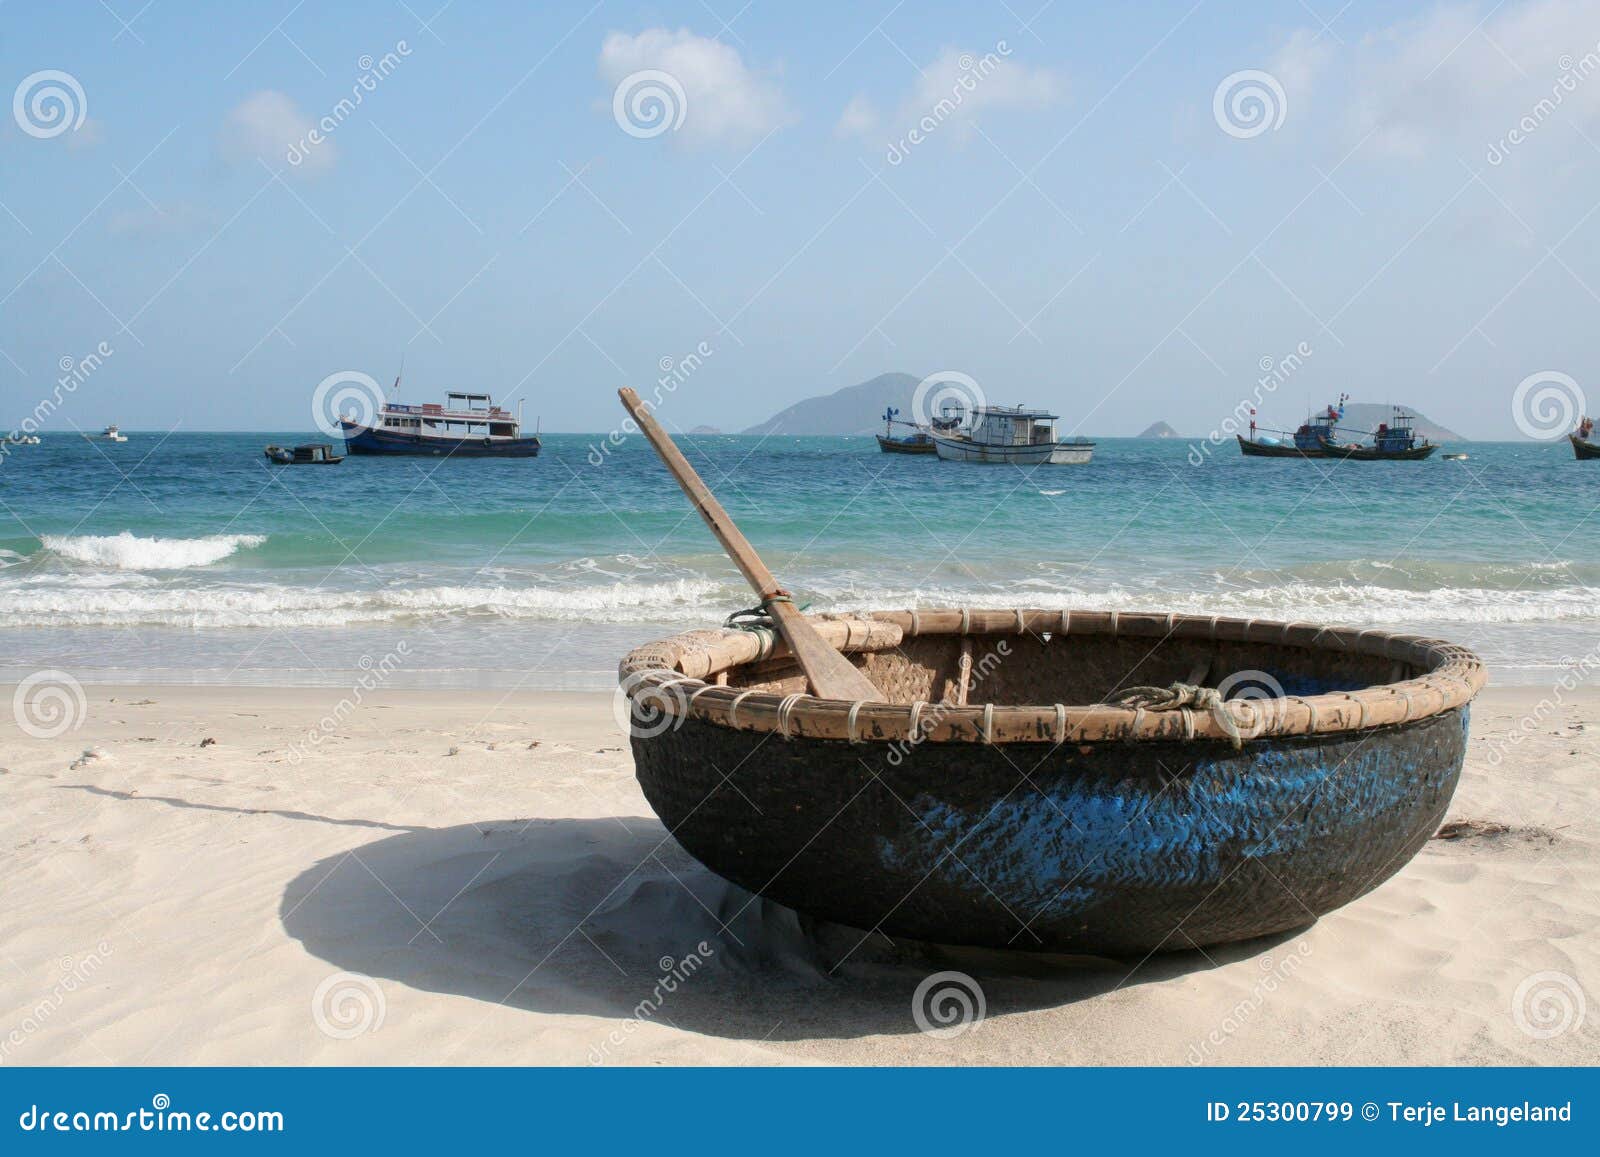 boat on beach, con dao